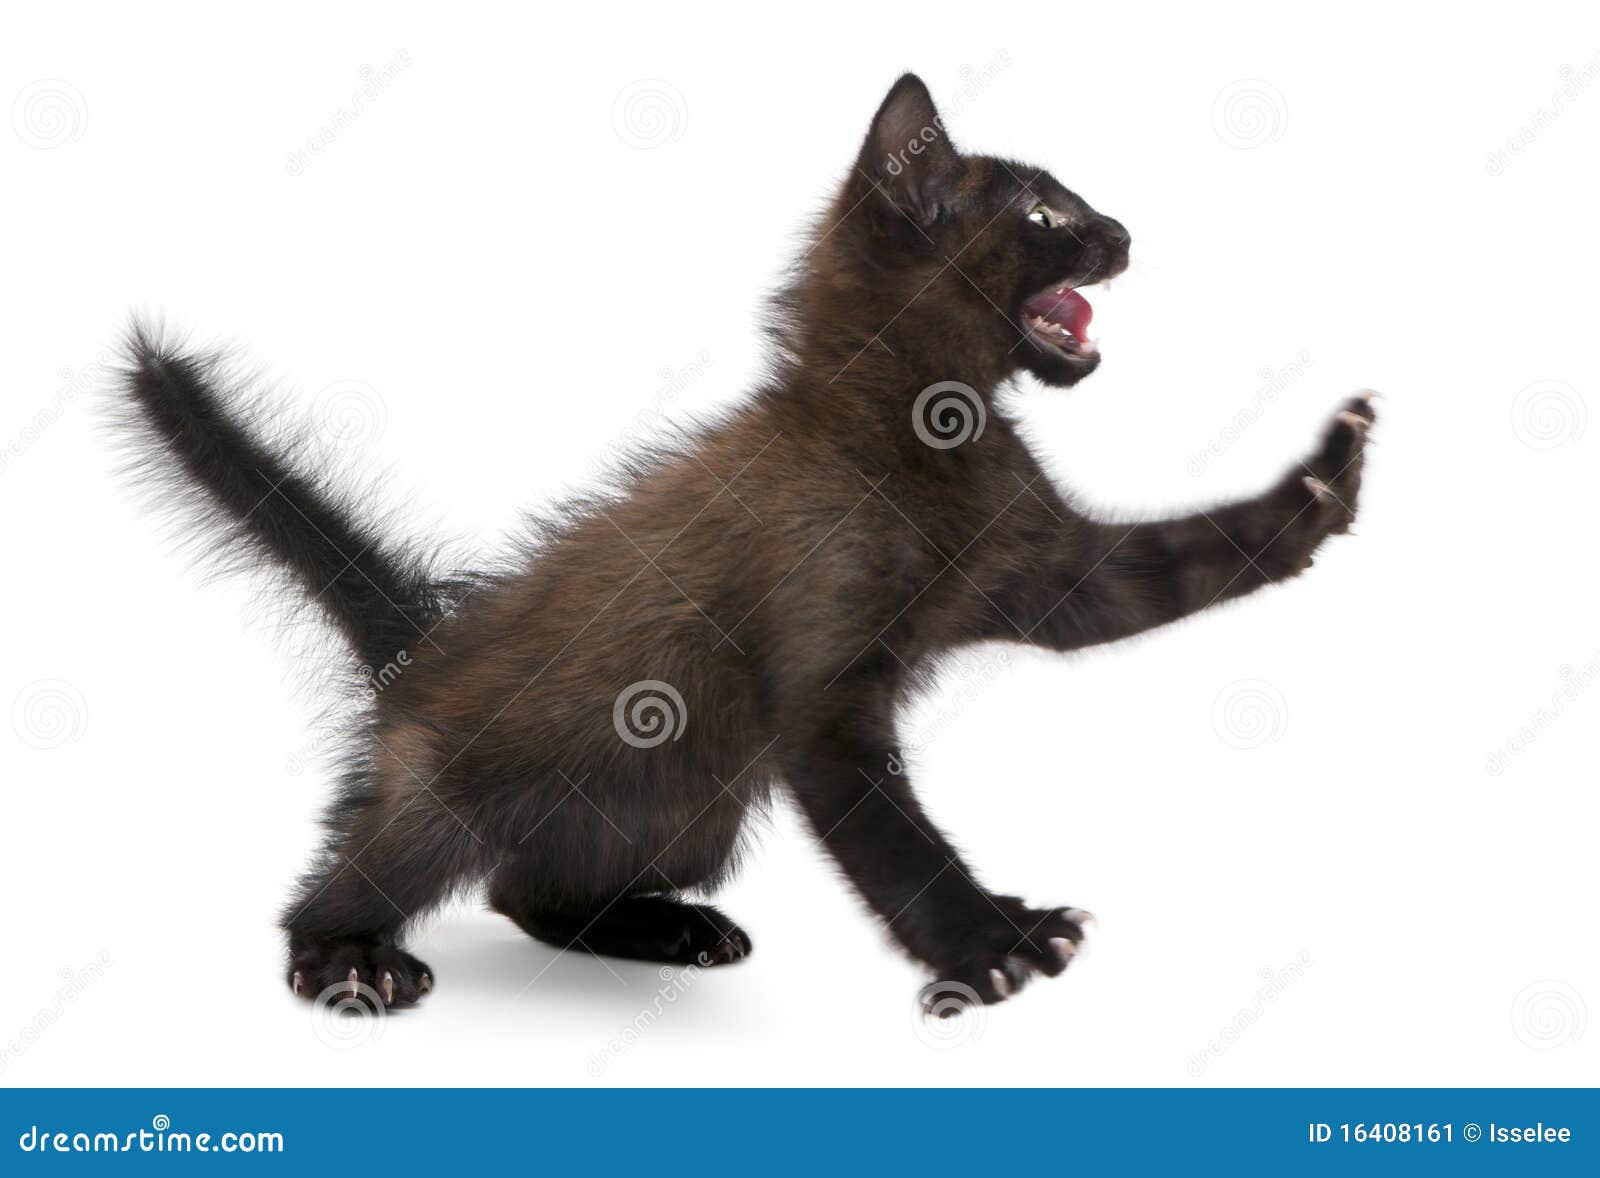 frightened black kitten standing